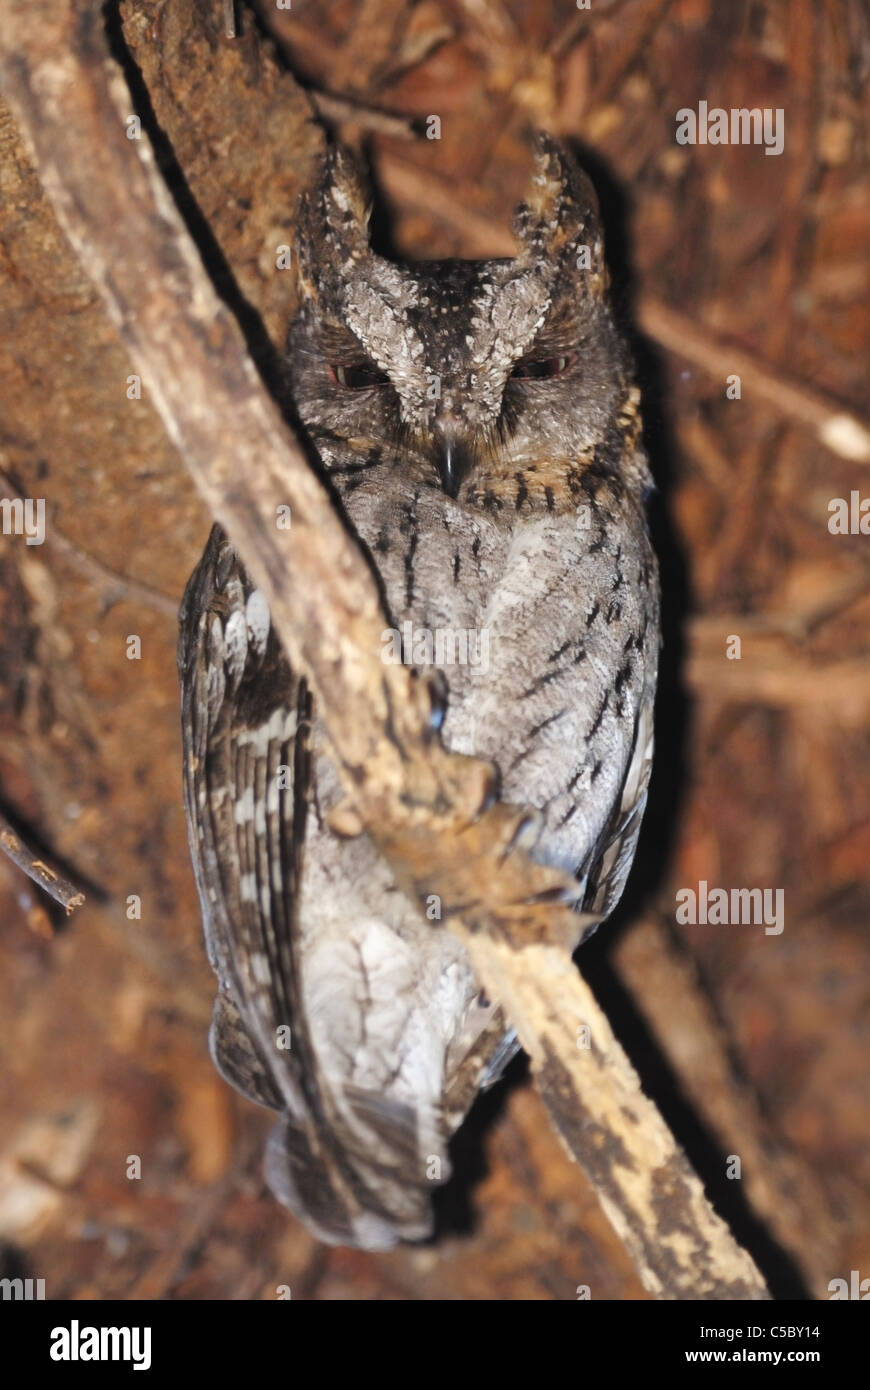 Madagascar Scops Owl (Otus rutilus) in Southern Madagascar Stock Photo